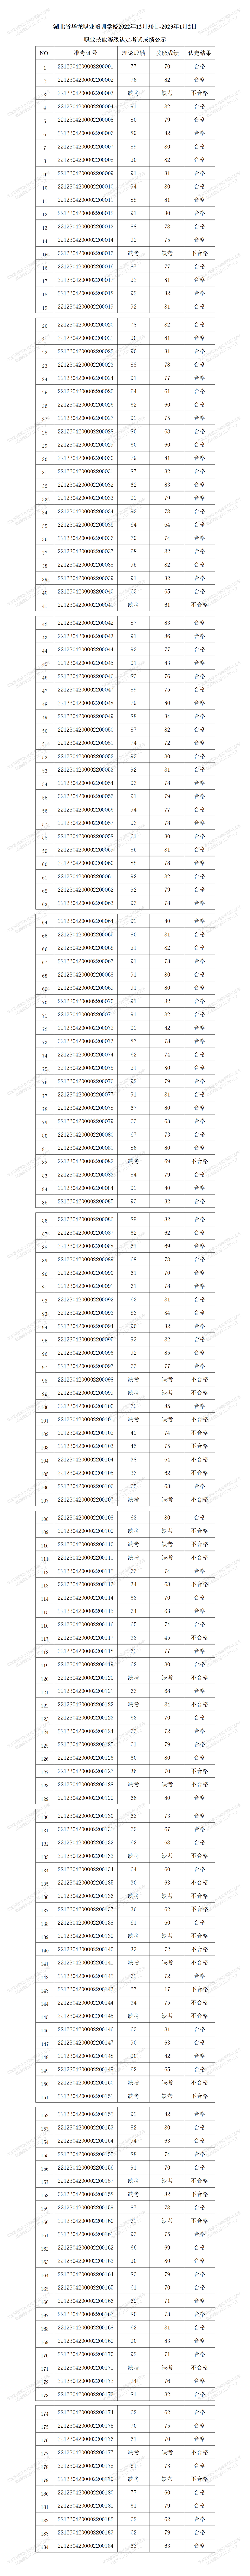 湖北省华龙职业培训学校2022年12月职业技能等级认定考试成绩公示_01